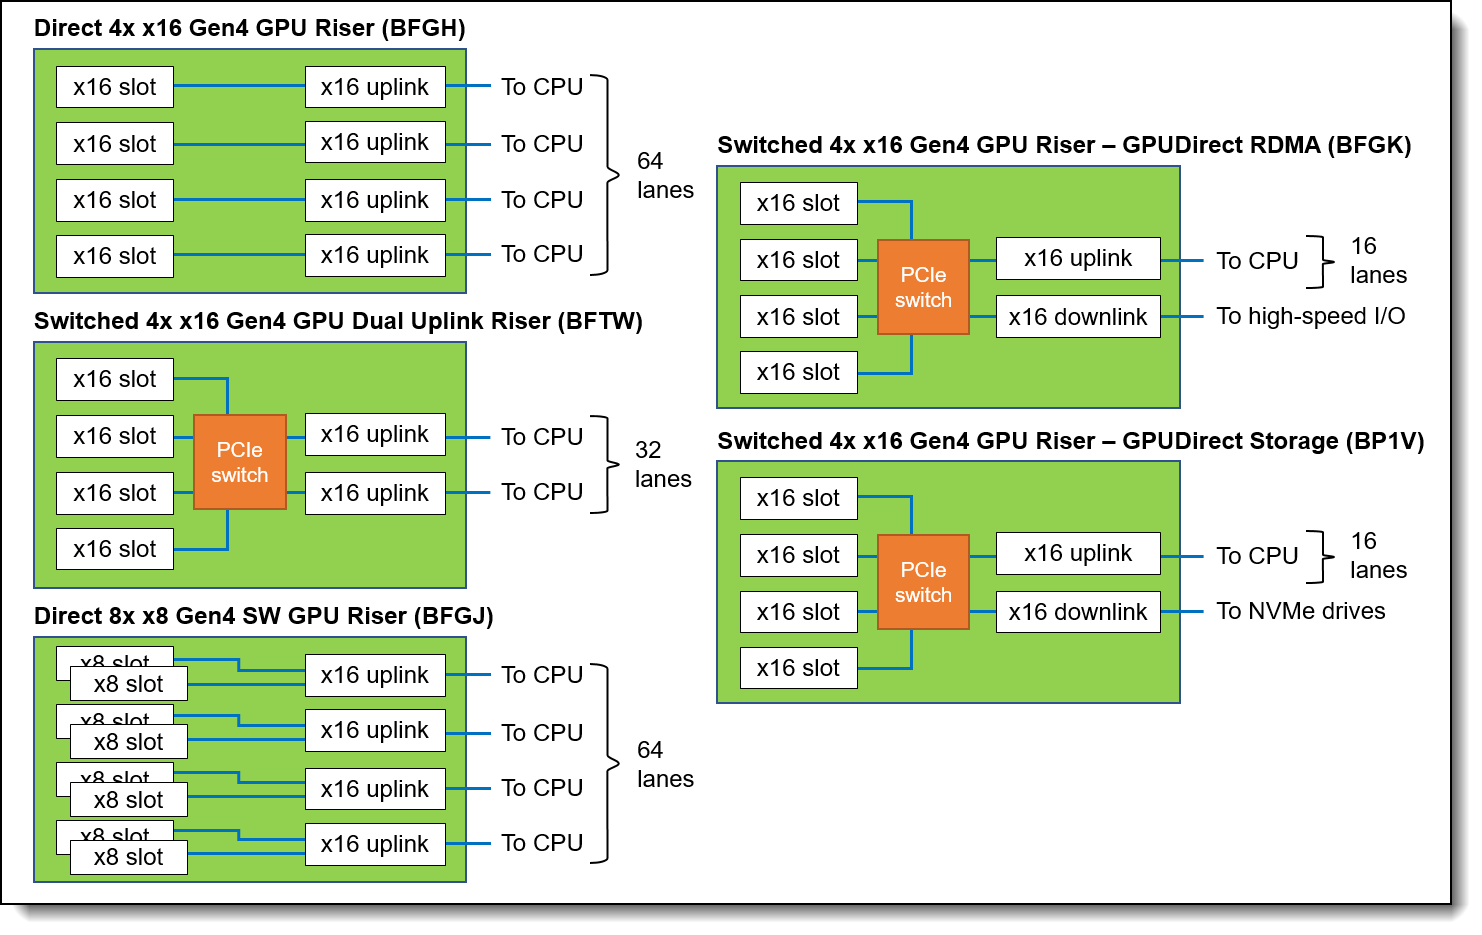 Block diagrams of the GPU risers